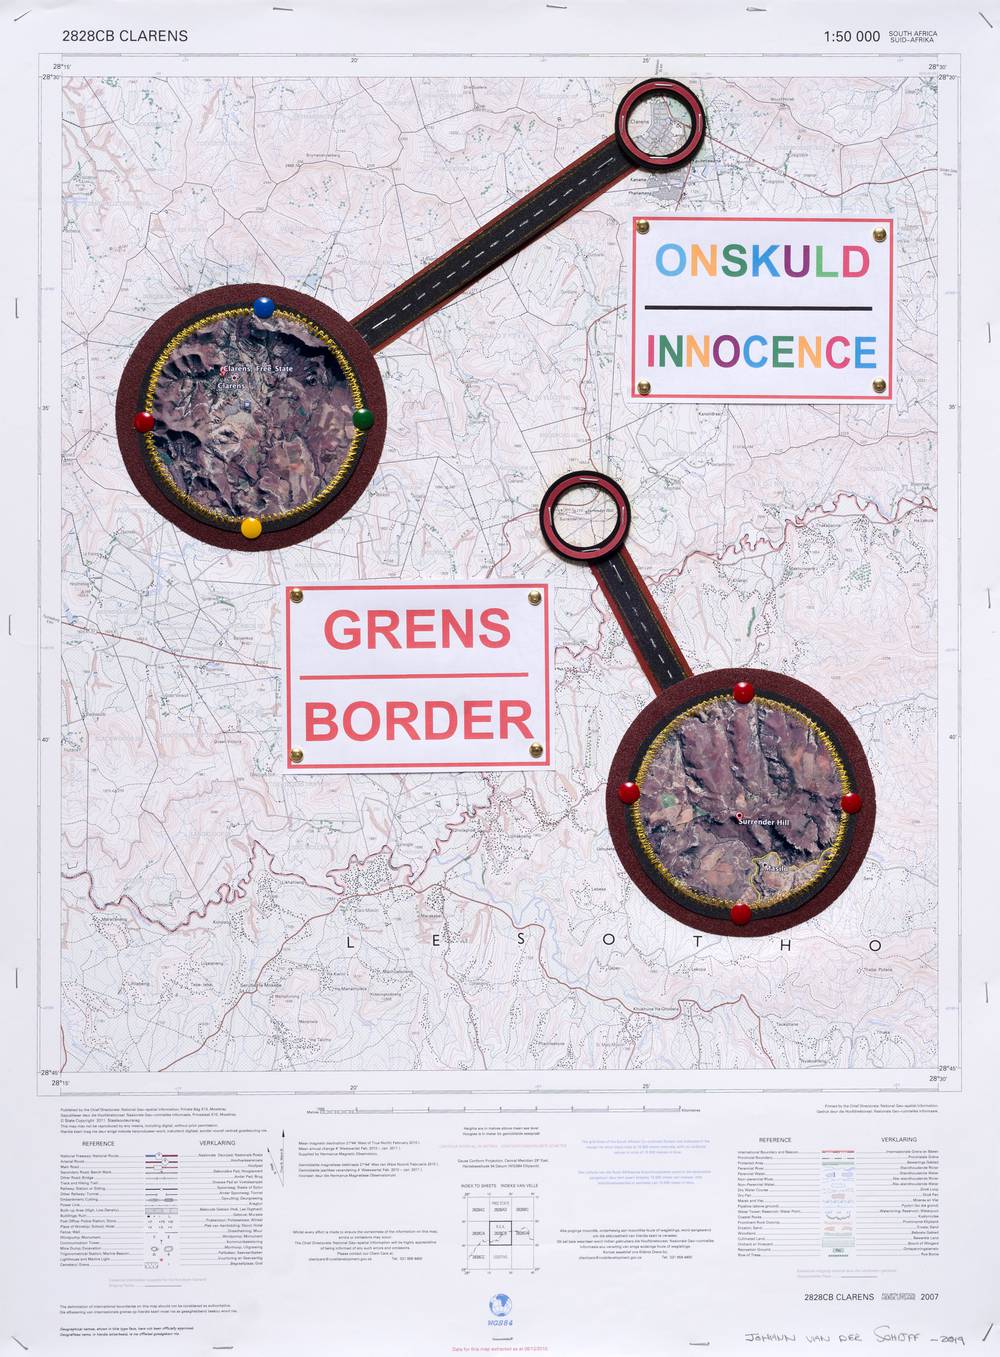 Grens (Border), 2019 – Johann van der Schijff